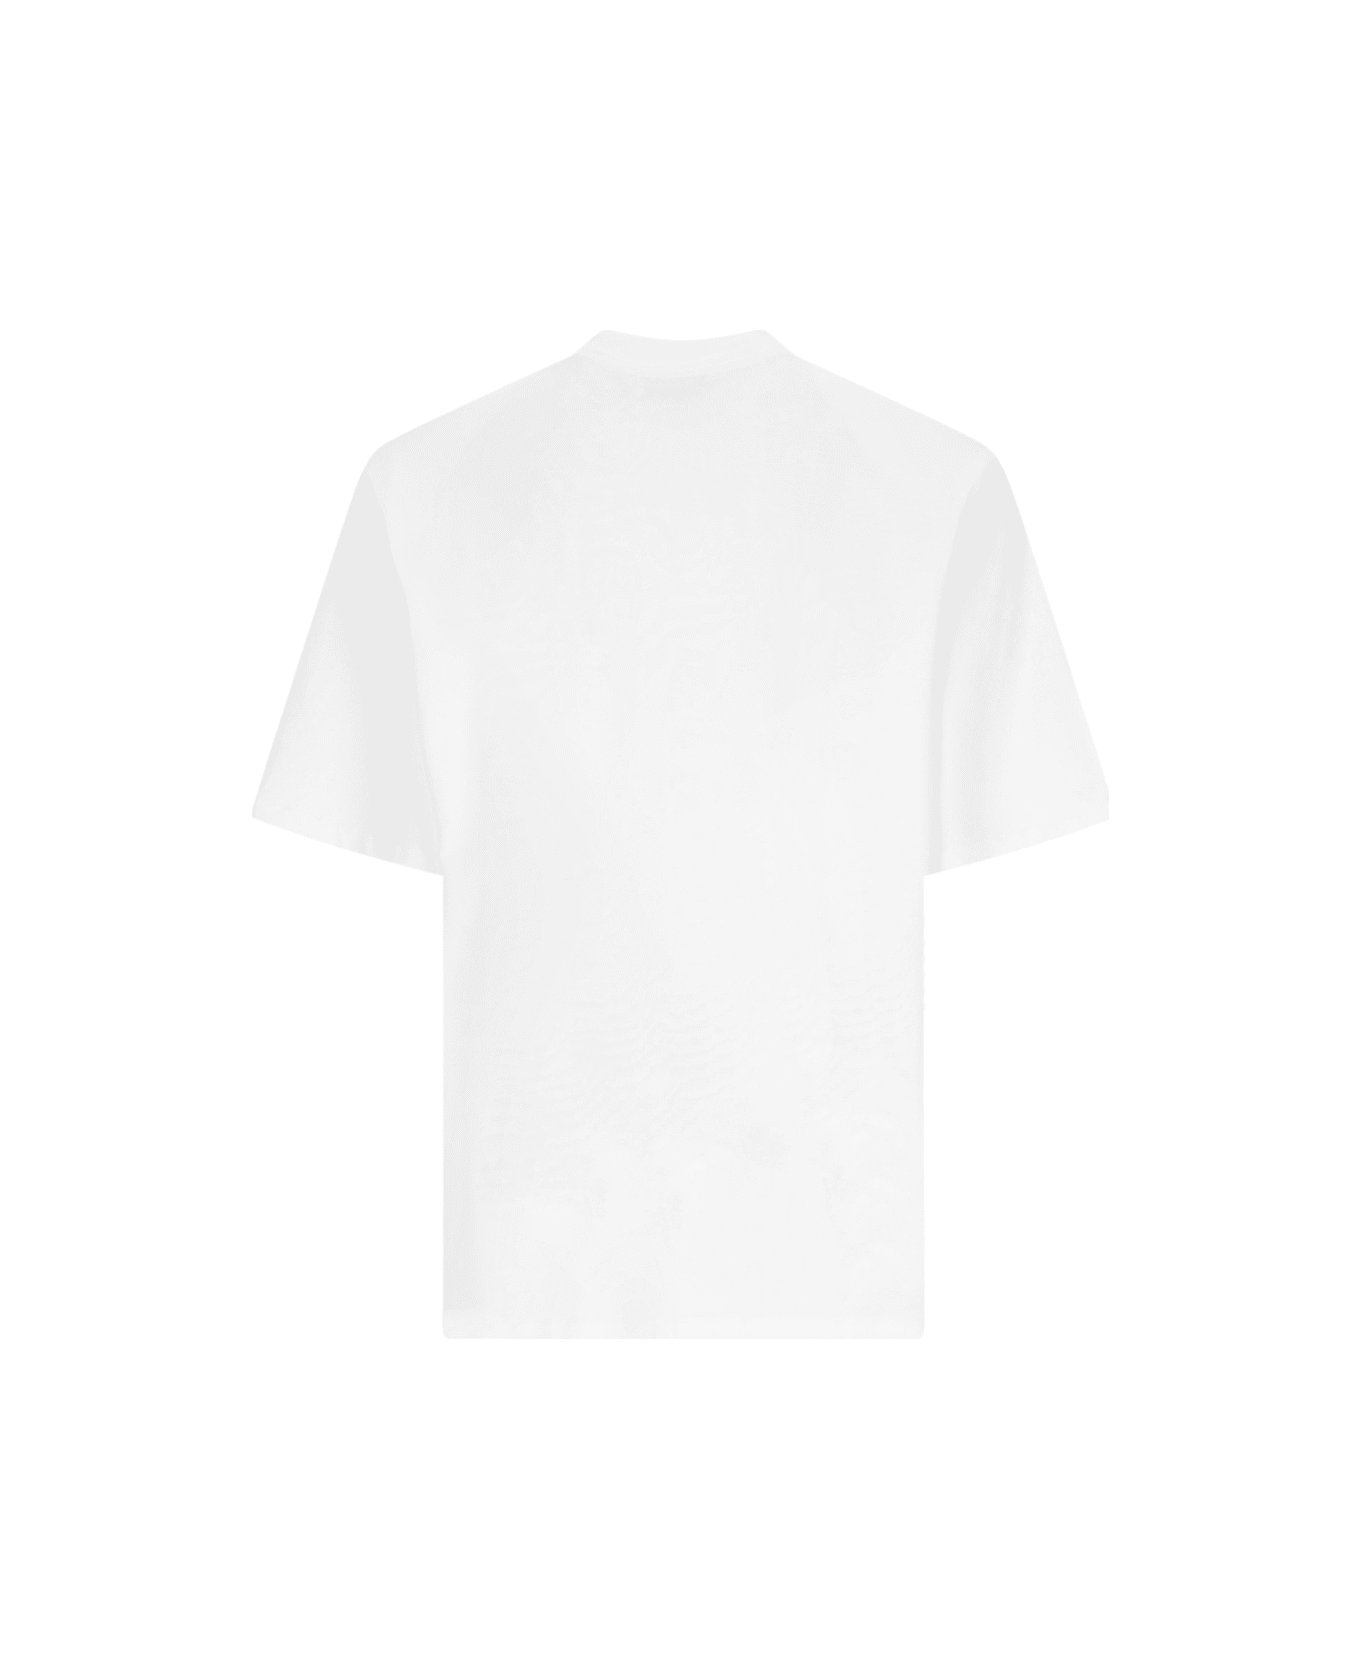 The Attico 'kilie' T-shirt - White Tシャツ